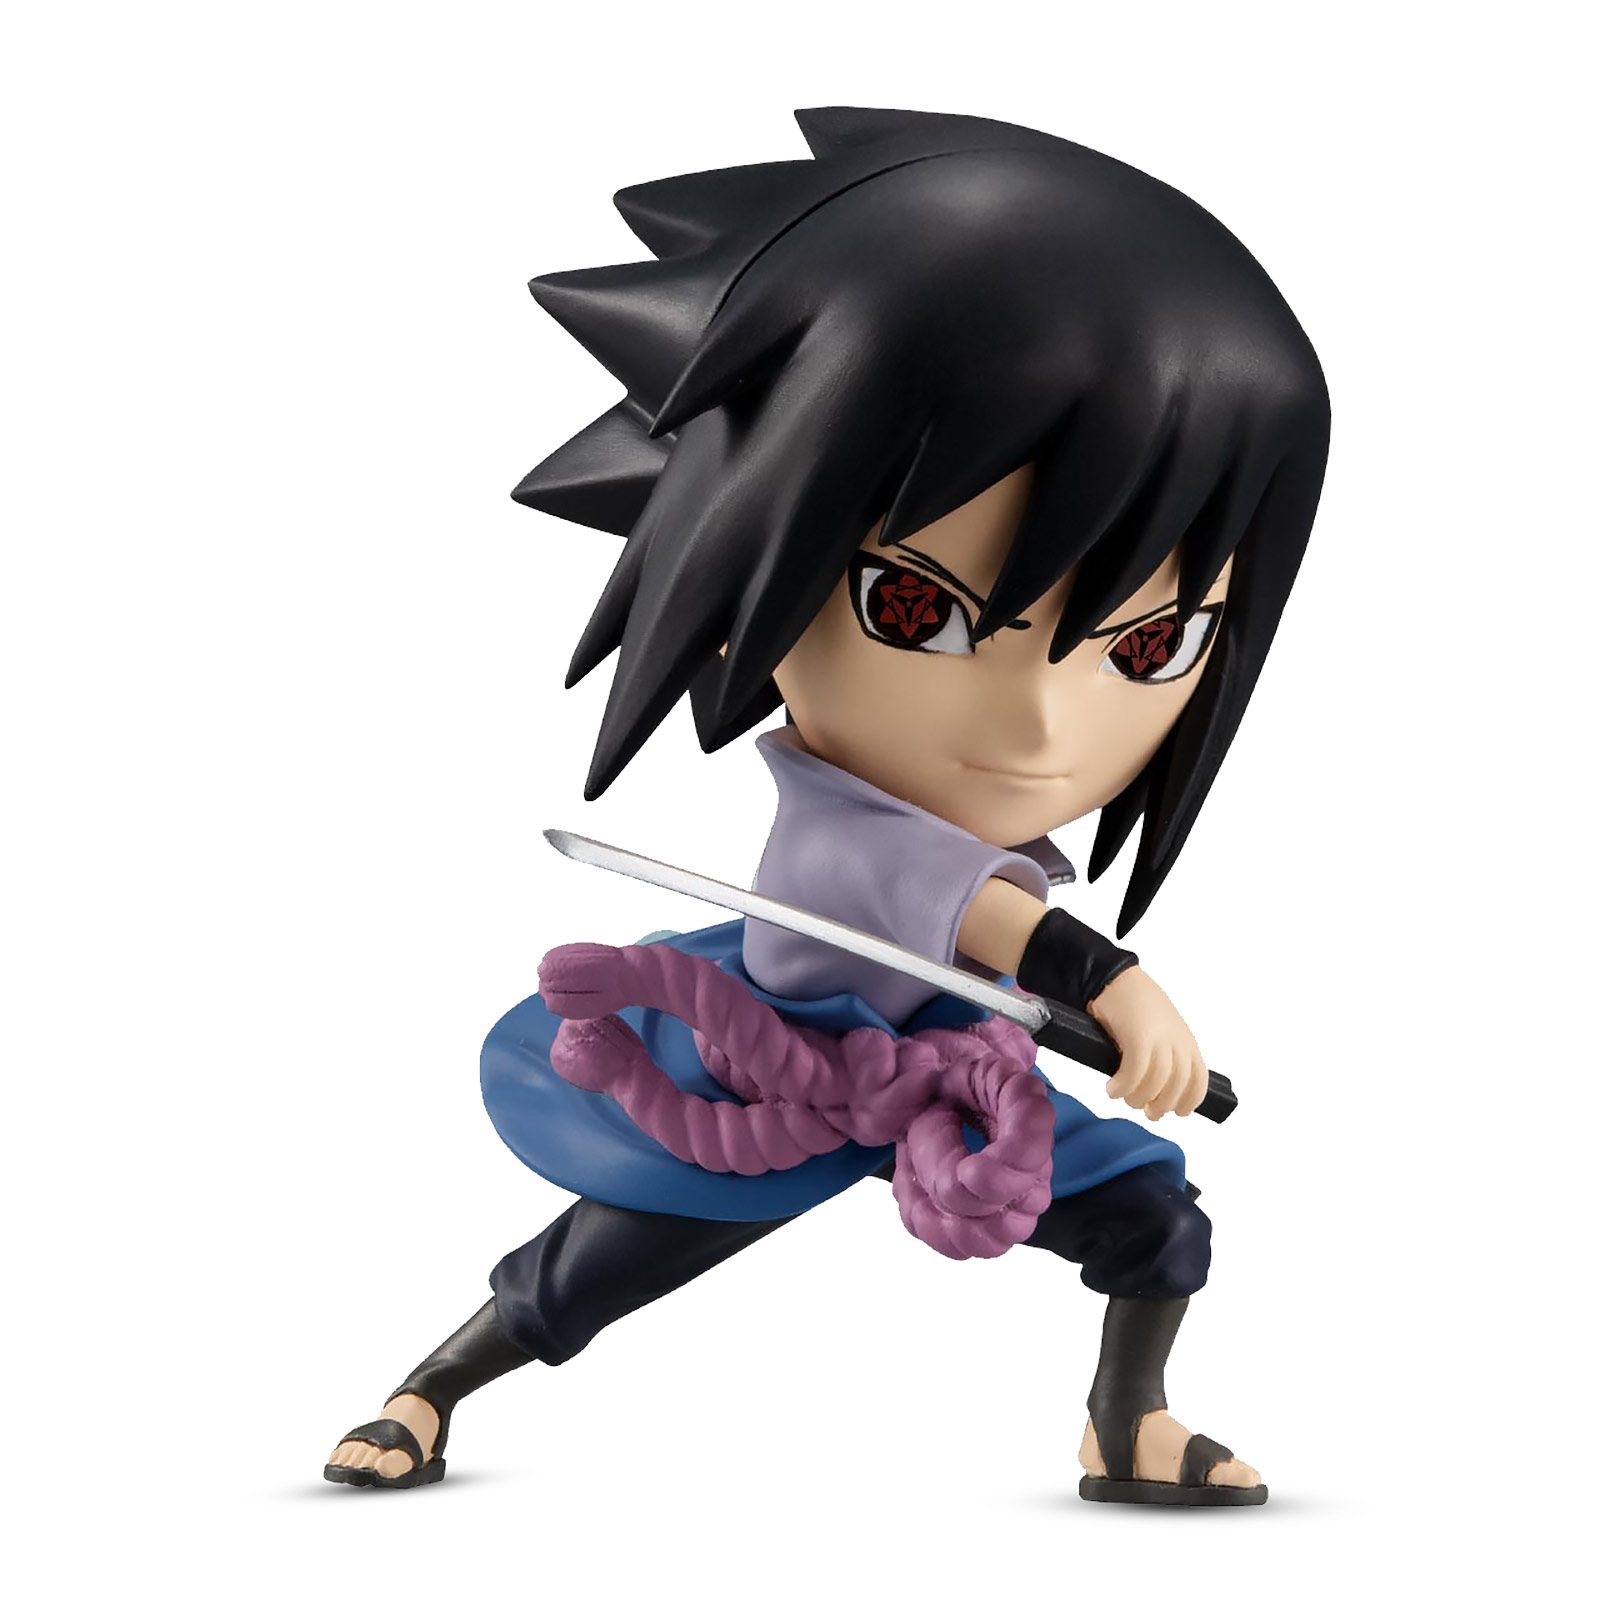 Naruto Shippuden - Figurine Chibi de Sasuke Uchiha